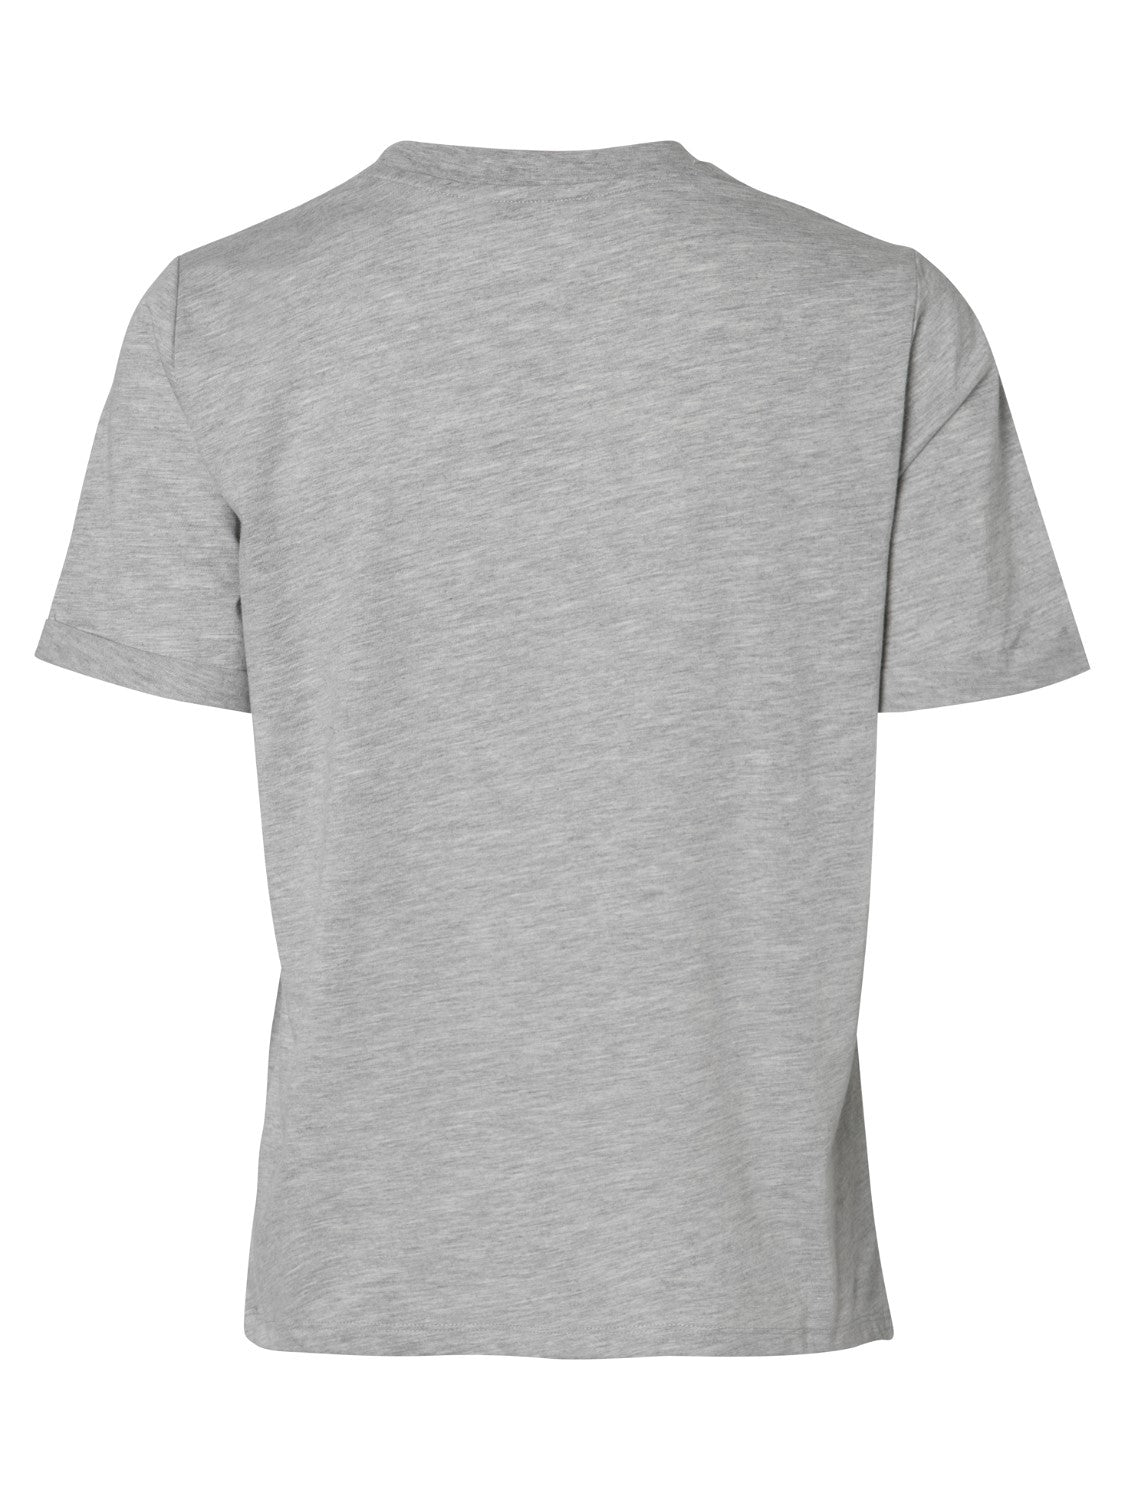 
                  
                    PCRIA Light Grey Melange T-Shirt
                  
                